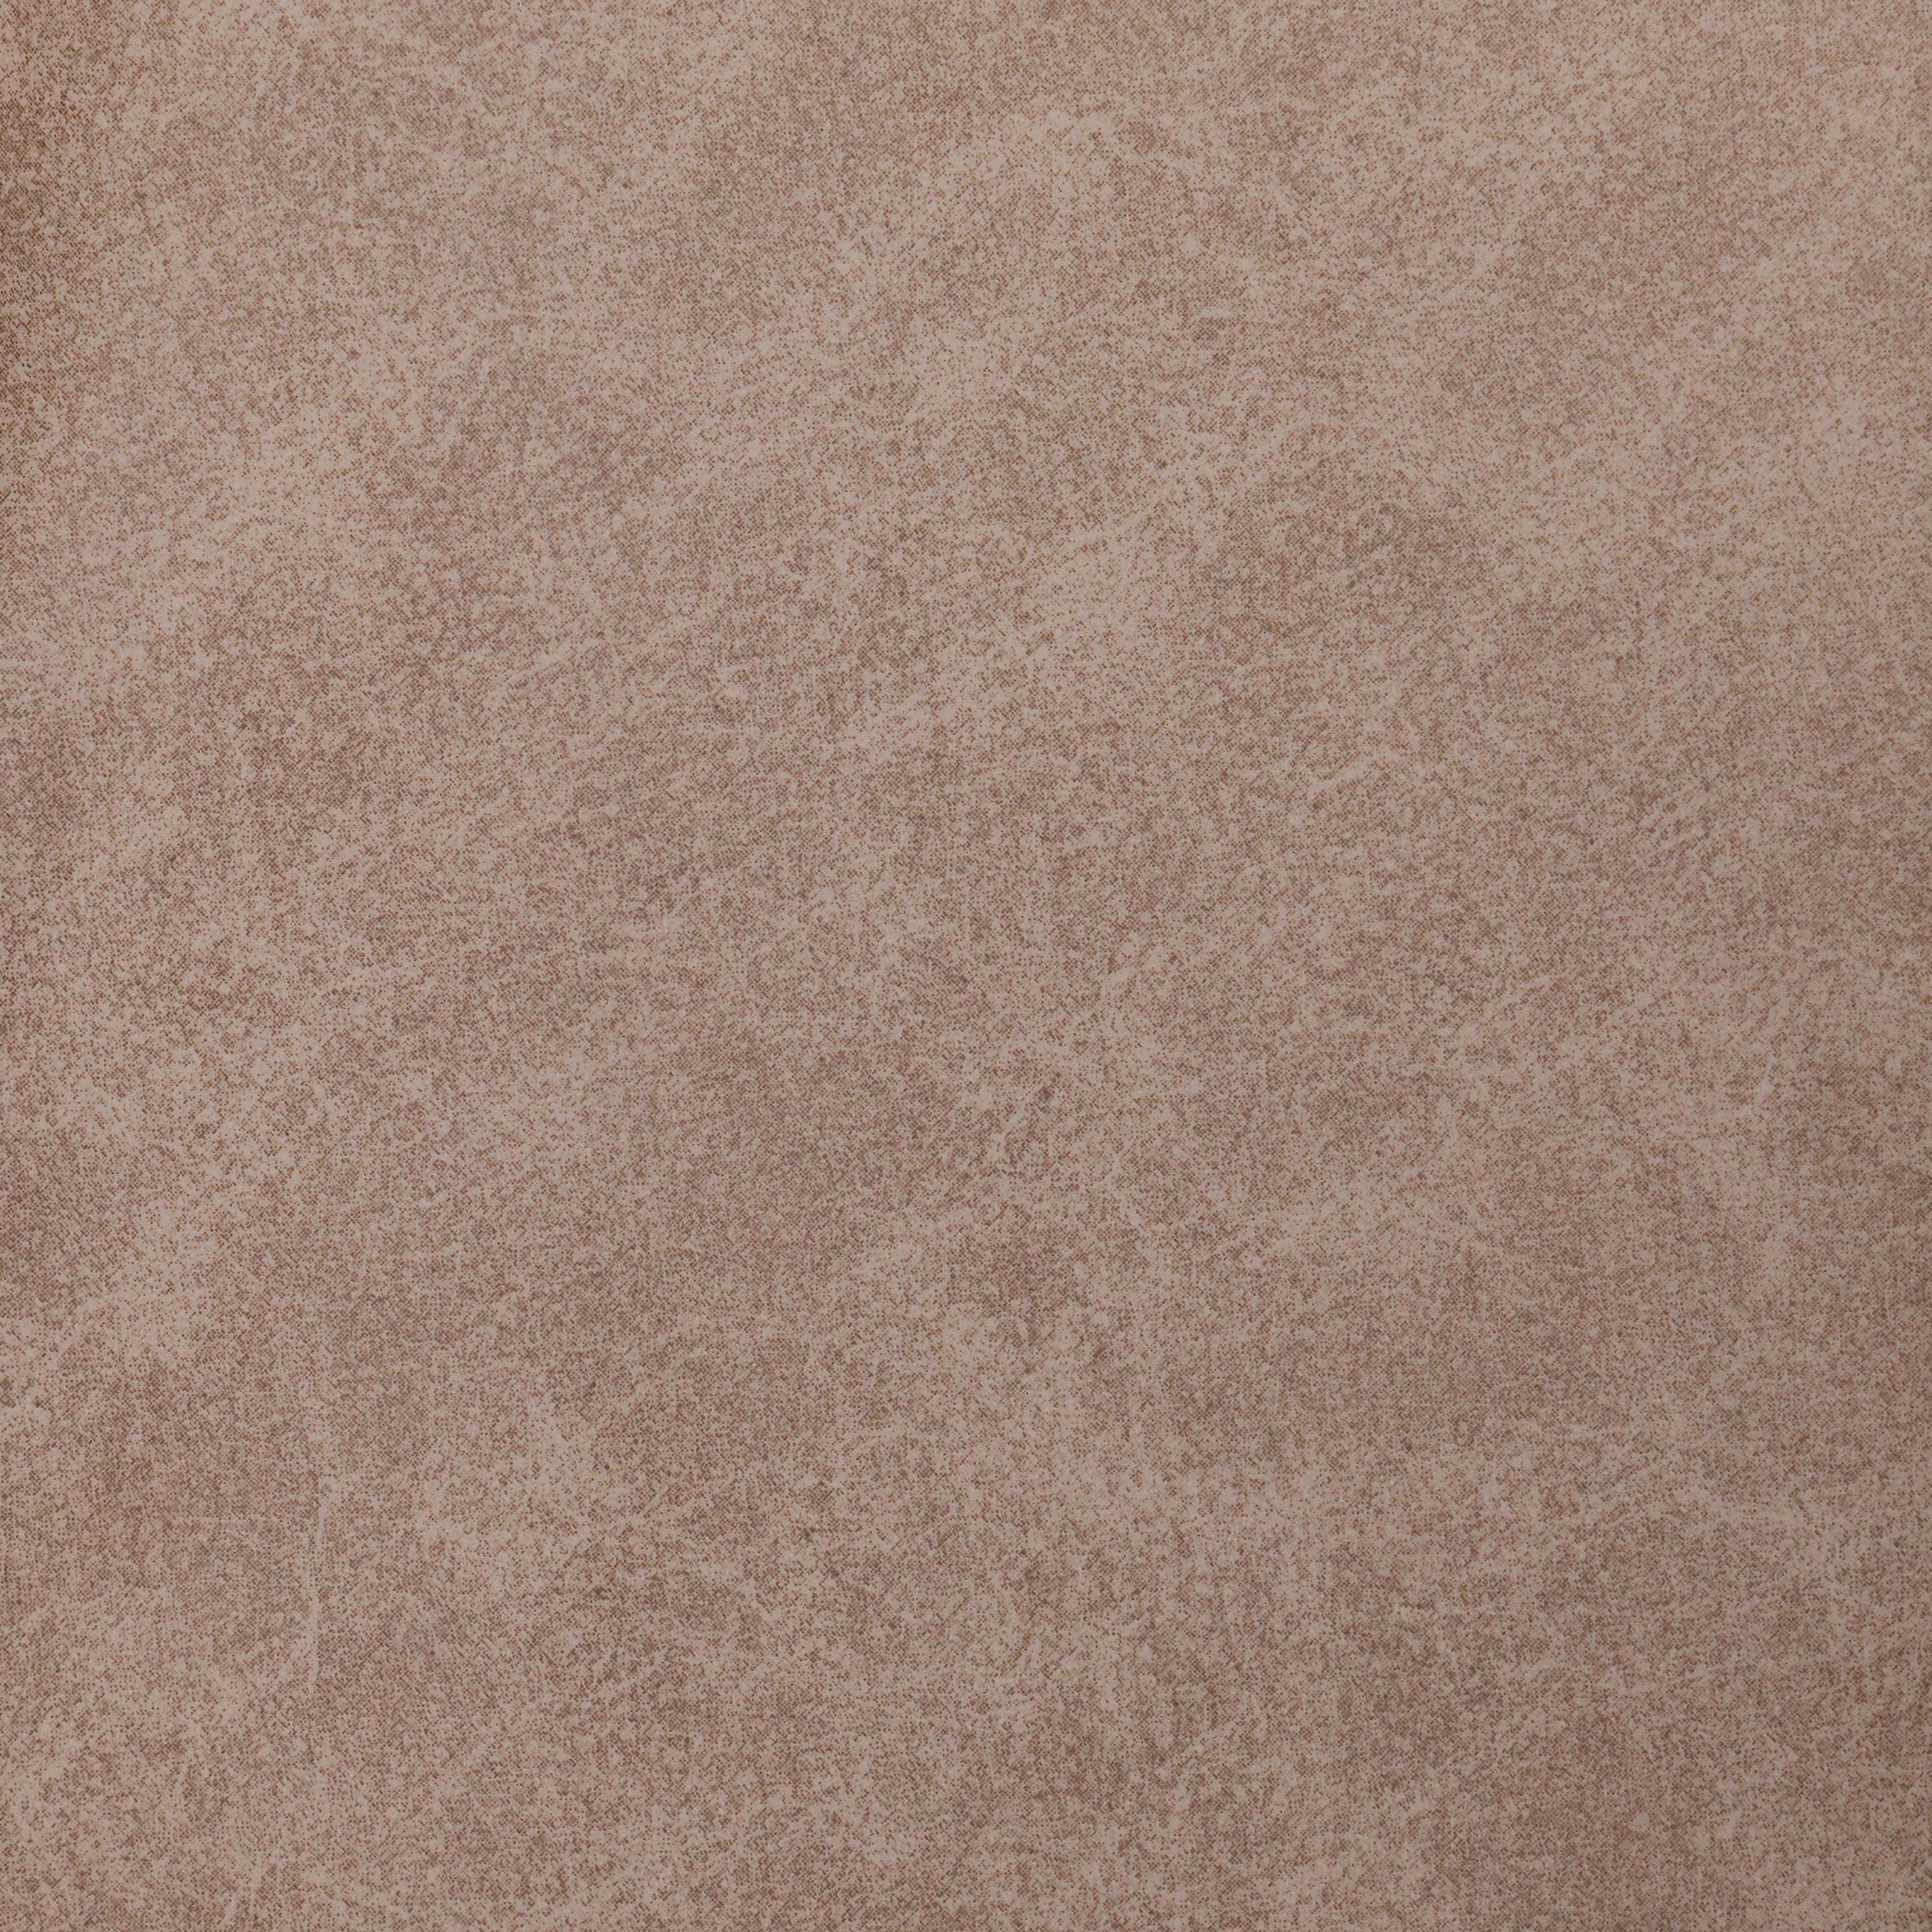 قماش جلد مقلوب 0261 - Damson Furnitureقماش جلد مقلوب 0261